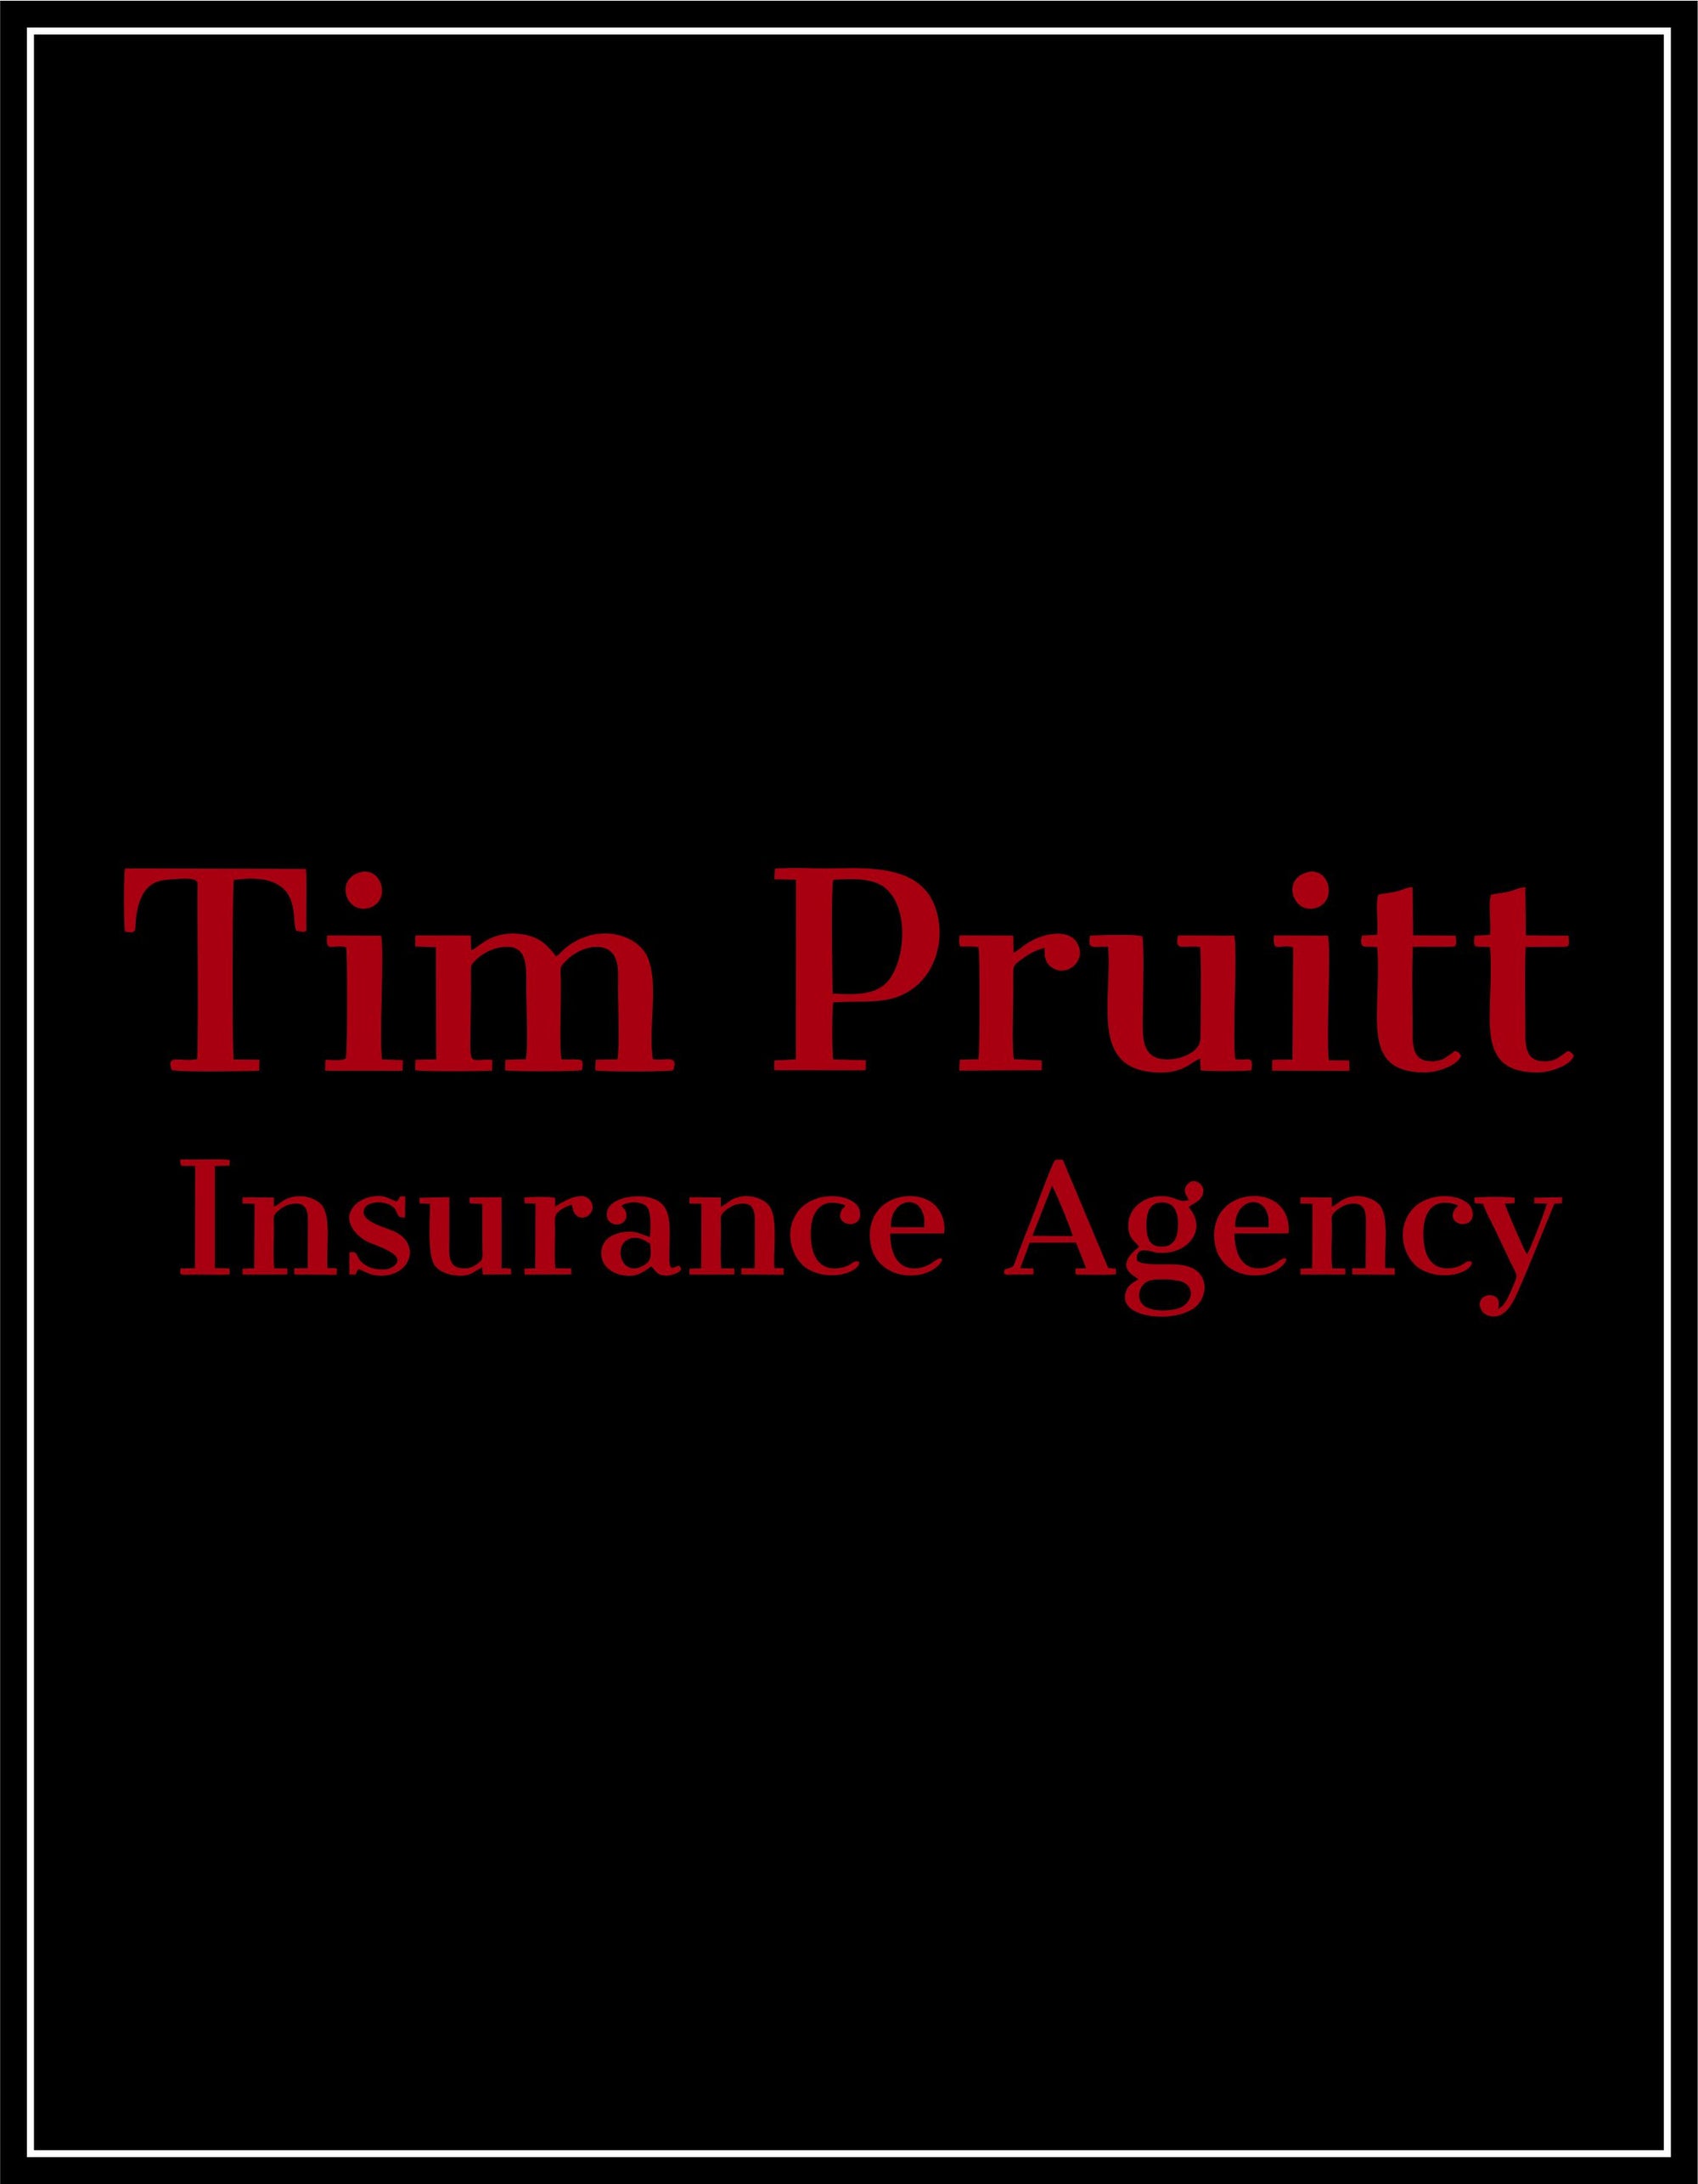 Tim Pruitt